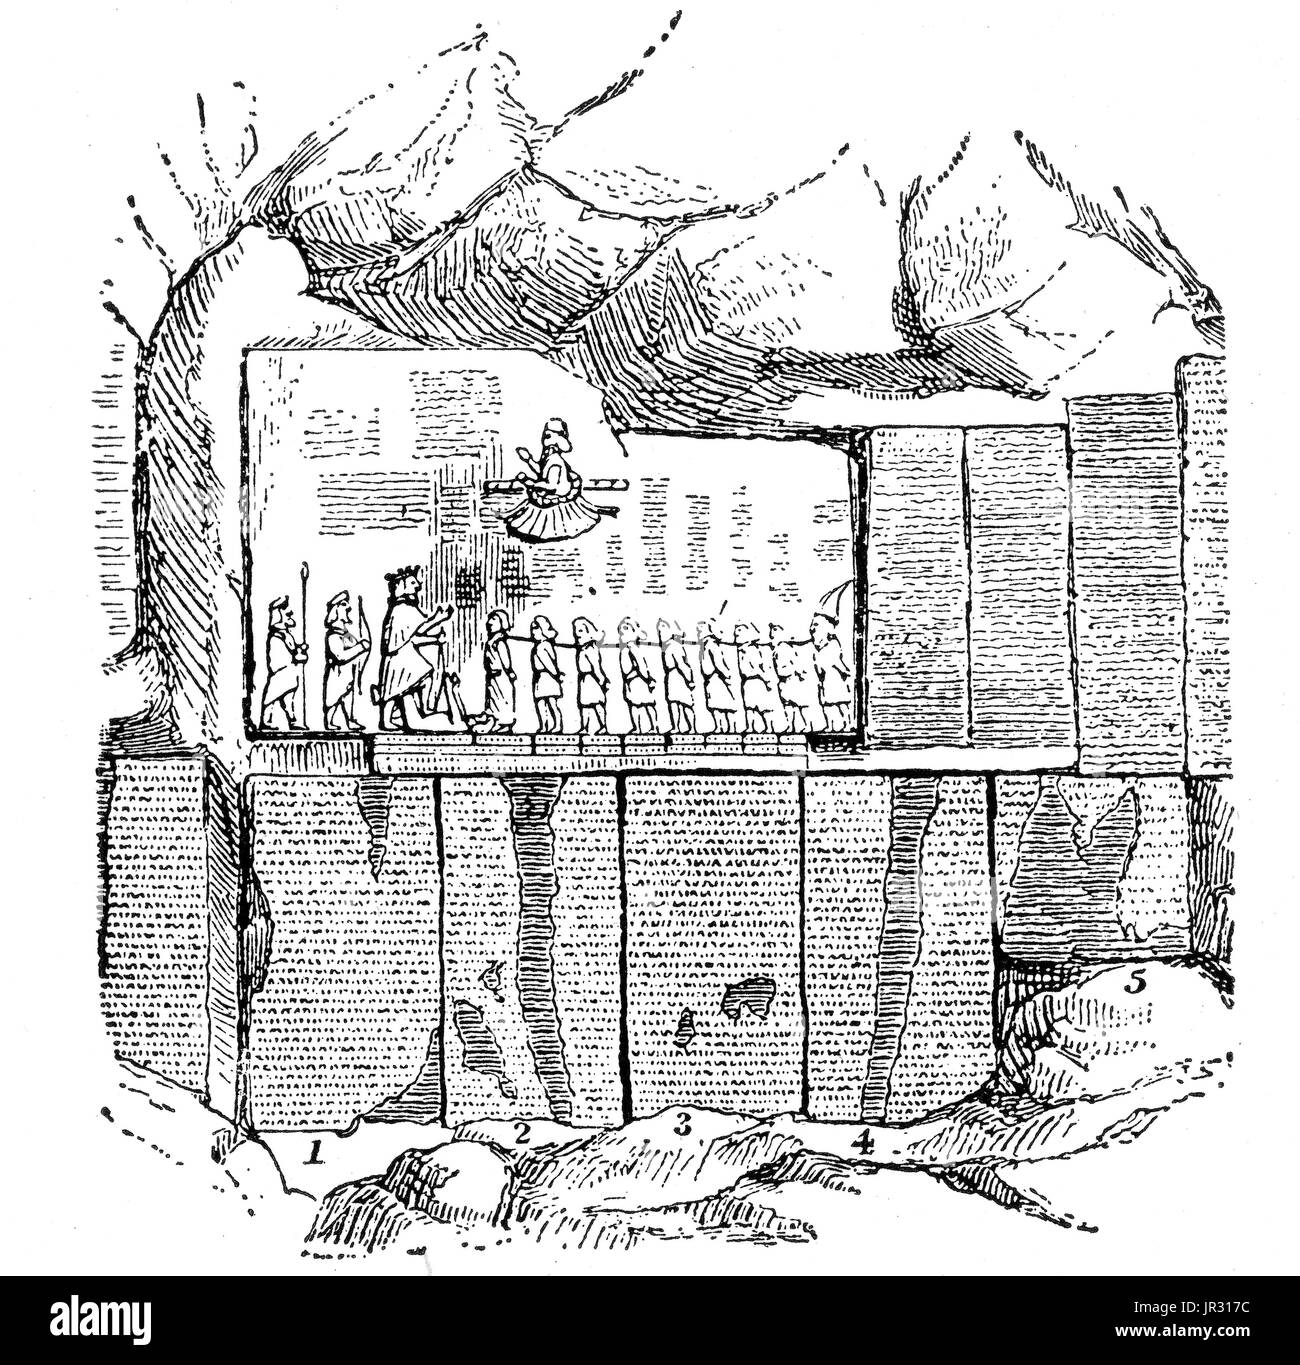 Die Behistun-Inschrift ist eine mehrsprachige Inschrift und großen Felsen Relief auf einer Klippe am Mount Behistun in Kermanshah Provinz des Iran, in der Nähe der Stadt Kermanshah im Westiran. Verfasst von Darius der große irgendwann zwischen 522 v. Chr. und 486 v. Chr. die Inschrift beginnt mit eine kurze Autobiographie des Darius, einschließlich seiner Herkunft und Abstammung. Später in der Inschrift bietet Darius eine lange Folge von Ereignissen, die nach dem Tod des Kyros und Kambyses II, in dem er neunzehn in einem Zeitraum von einem Jahr, legte mehrere Rebellionen im persischen Reich gekämpft. D Stockfoto